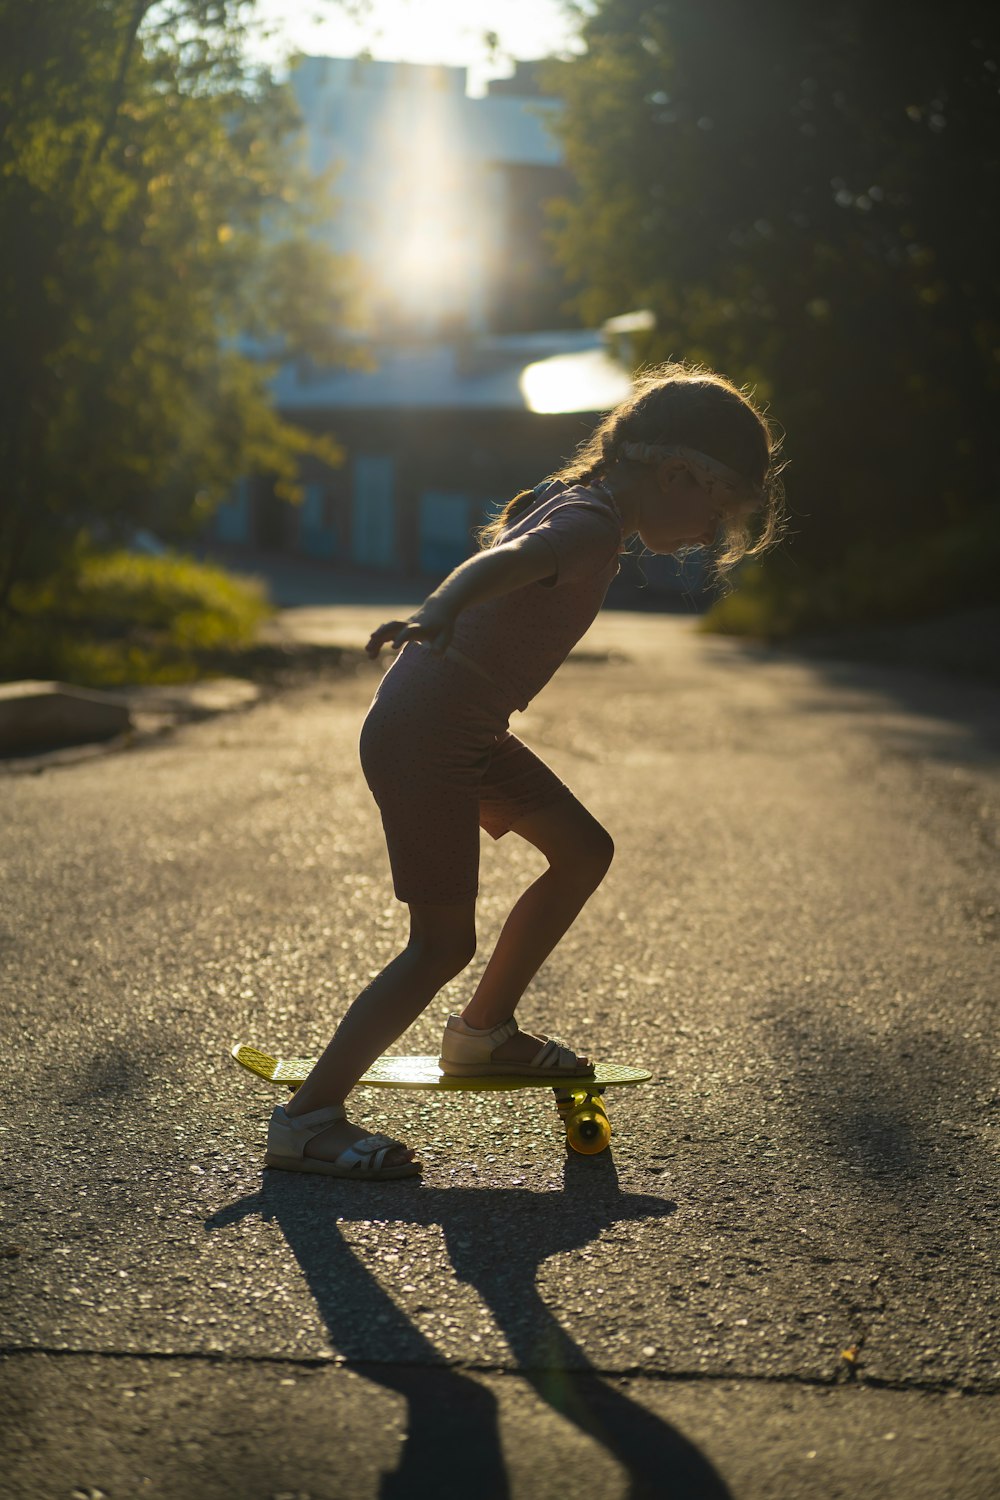 a little girl riding a skateboard down a street